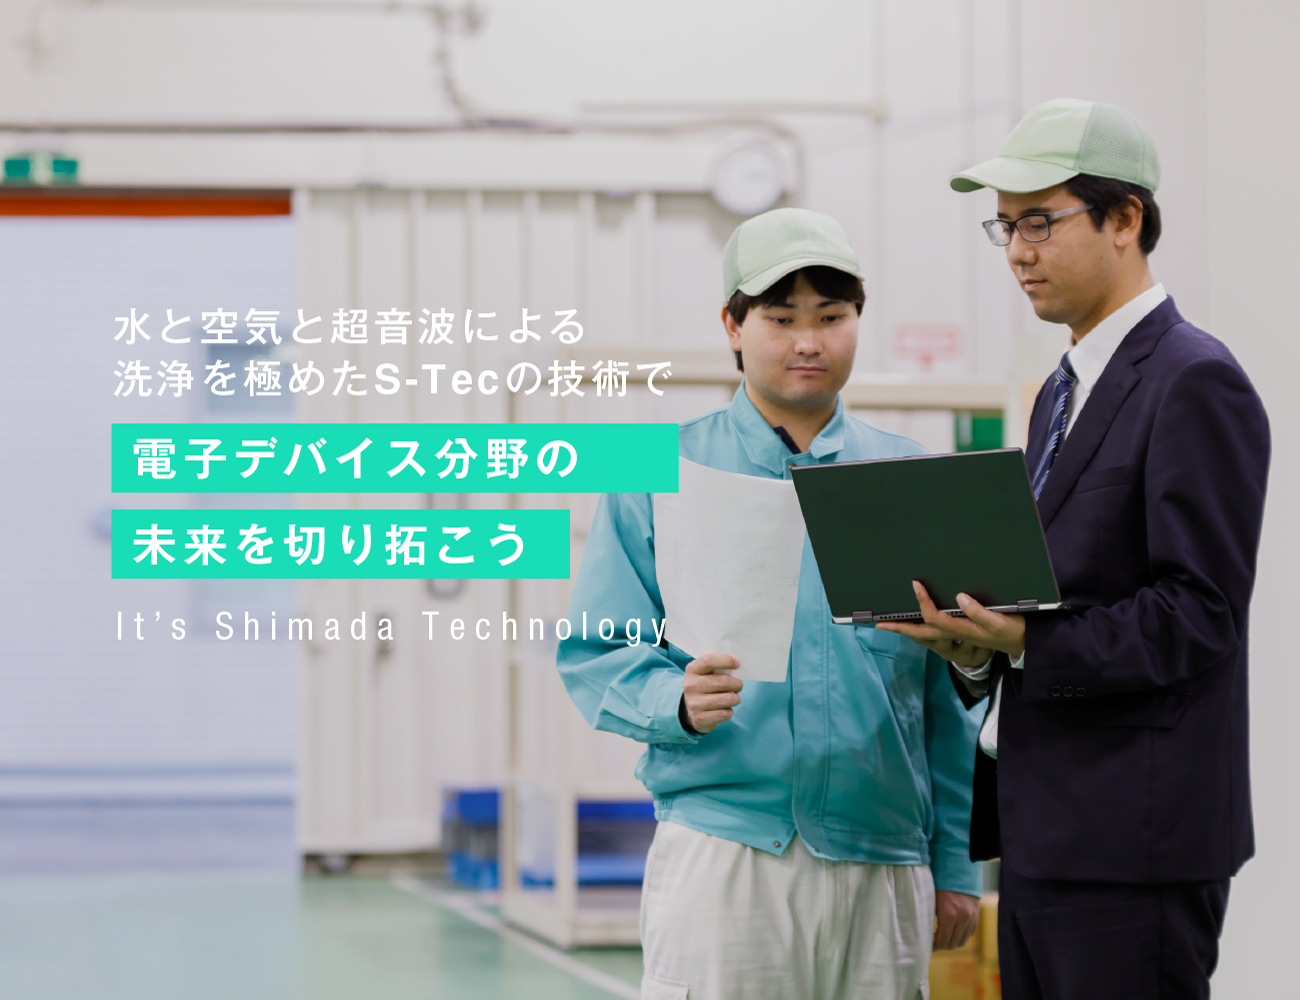  đơn hàng kỹ sư điện tử tự động hóa đi Nhật